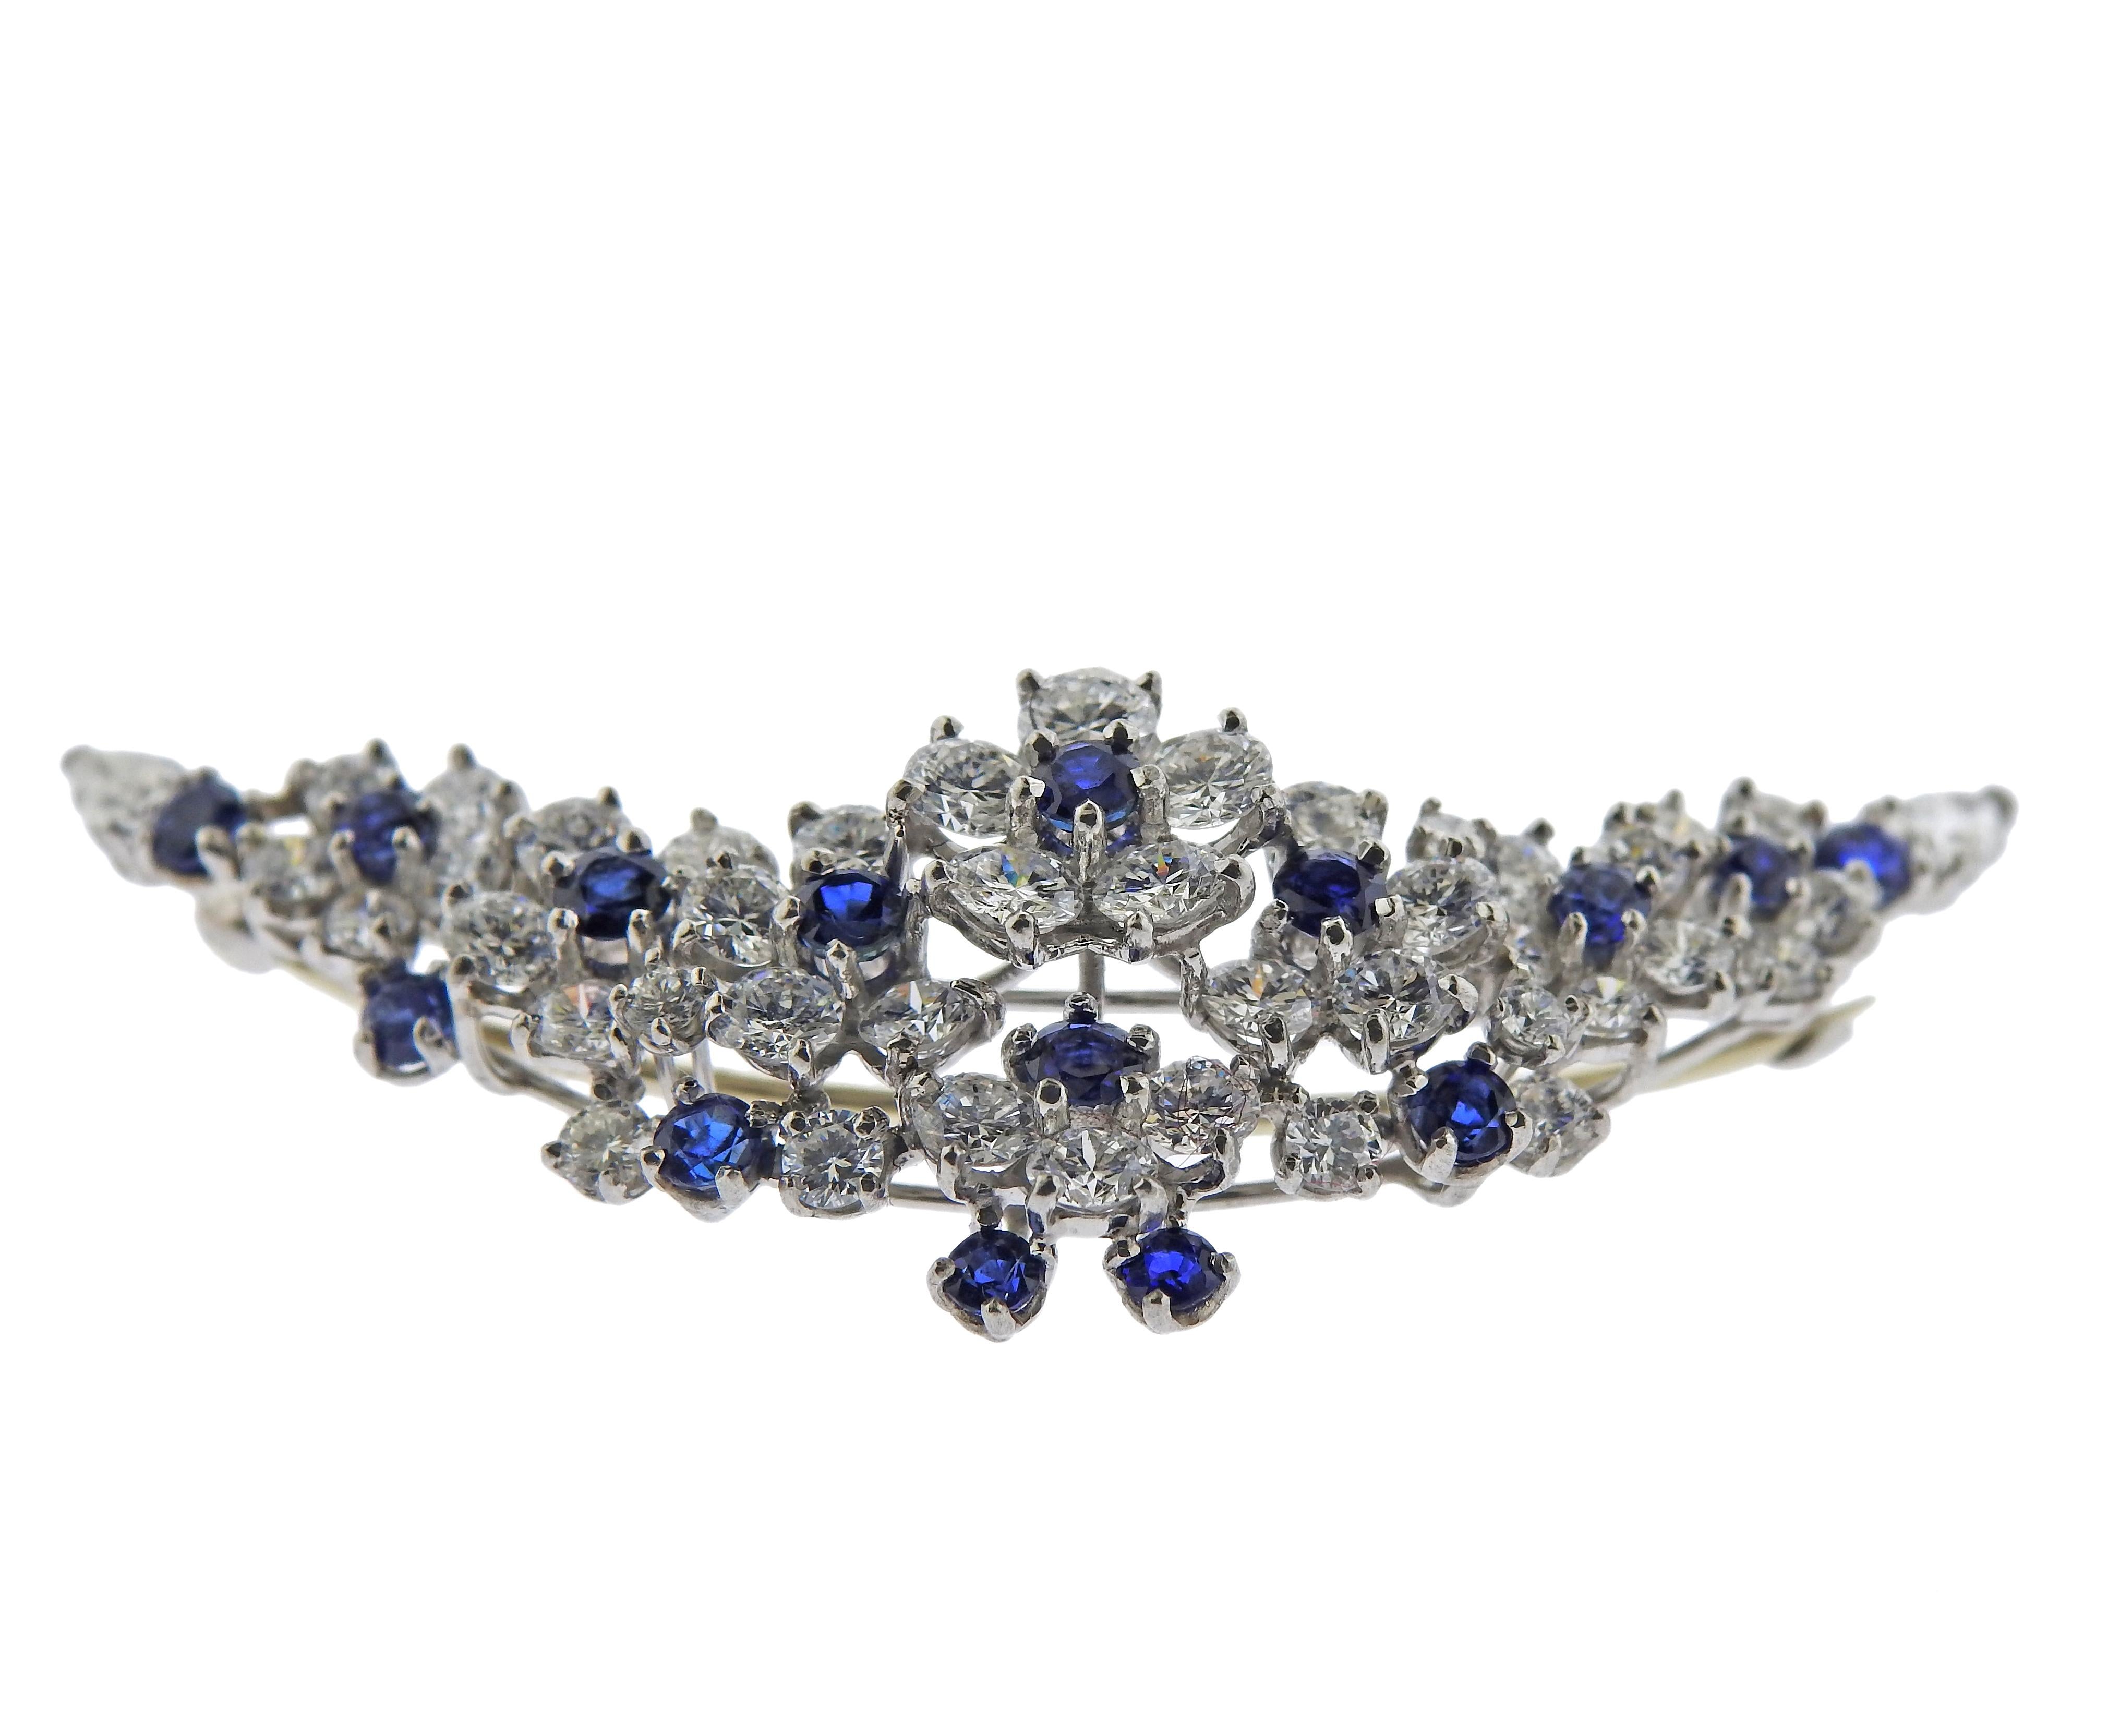 Blumenbrosche aus Platin von Oscar Heyman Bros. mit blauen Saphiren und ca. 4,50ctw an Diamanten. Brosche misst 2,25